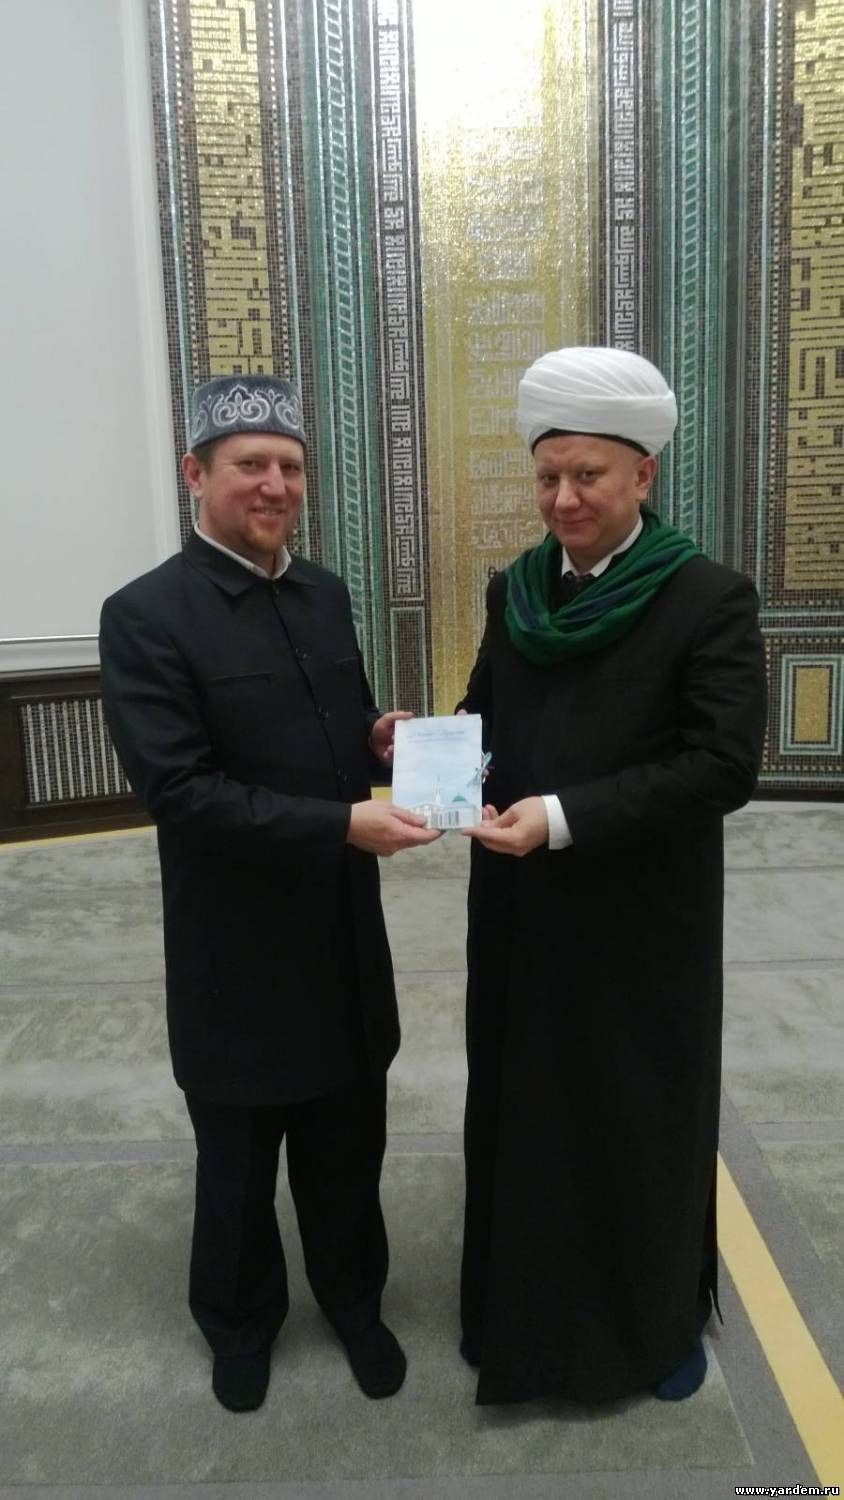 Муфтий Москвы Альбир Крганов поздравил с юбилеем фонда "Ярдэм"